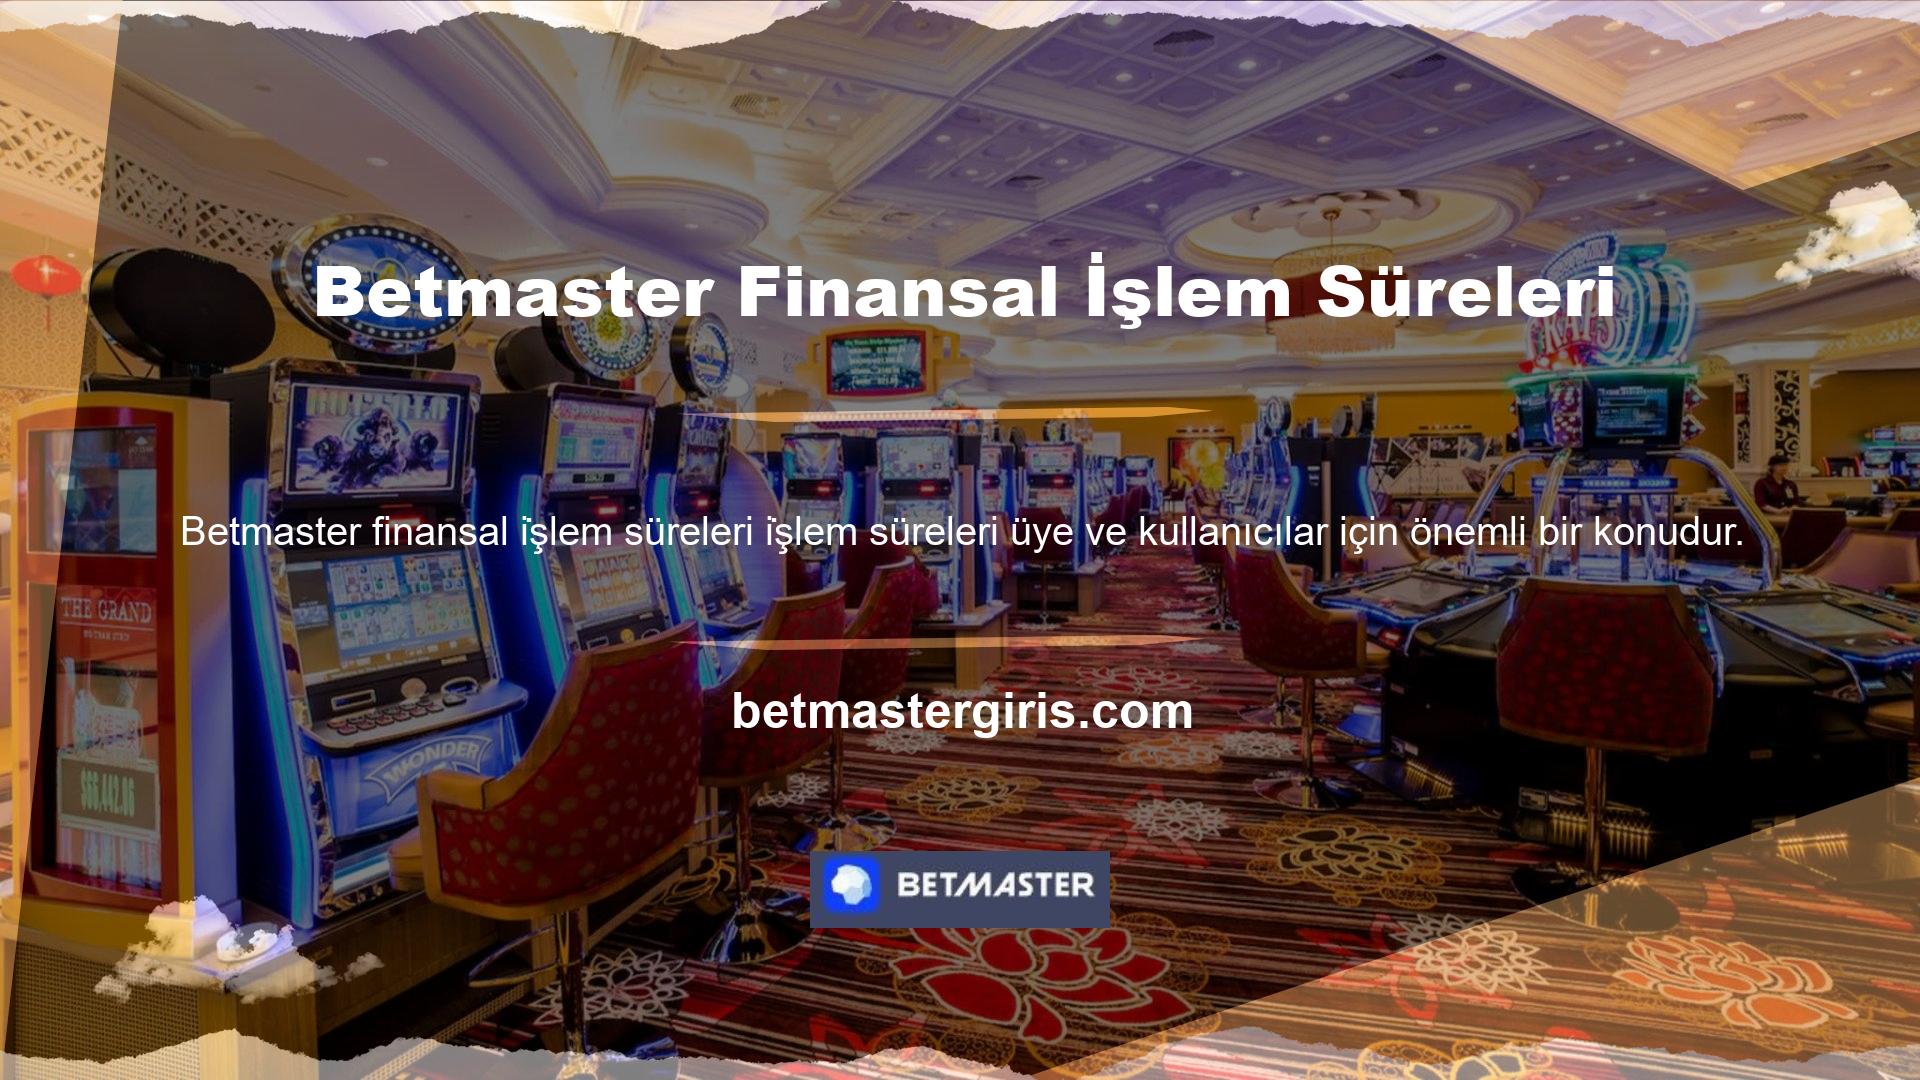 Betmaster bahis sitesi, finansal işlemlerin süresi ve bahis ödeme yöntemlerinin güvenilirliği ile karakterize edilir